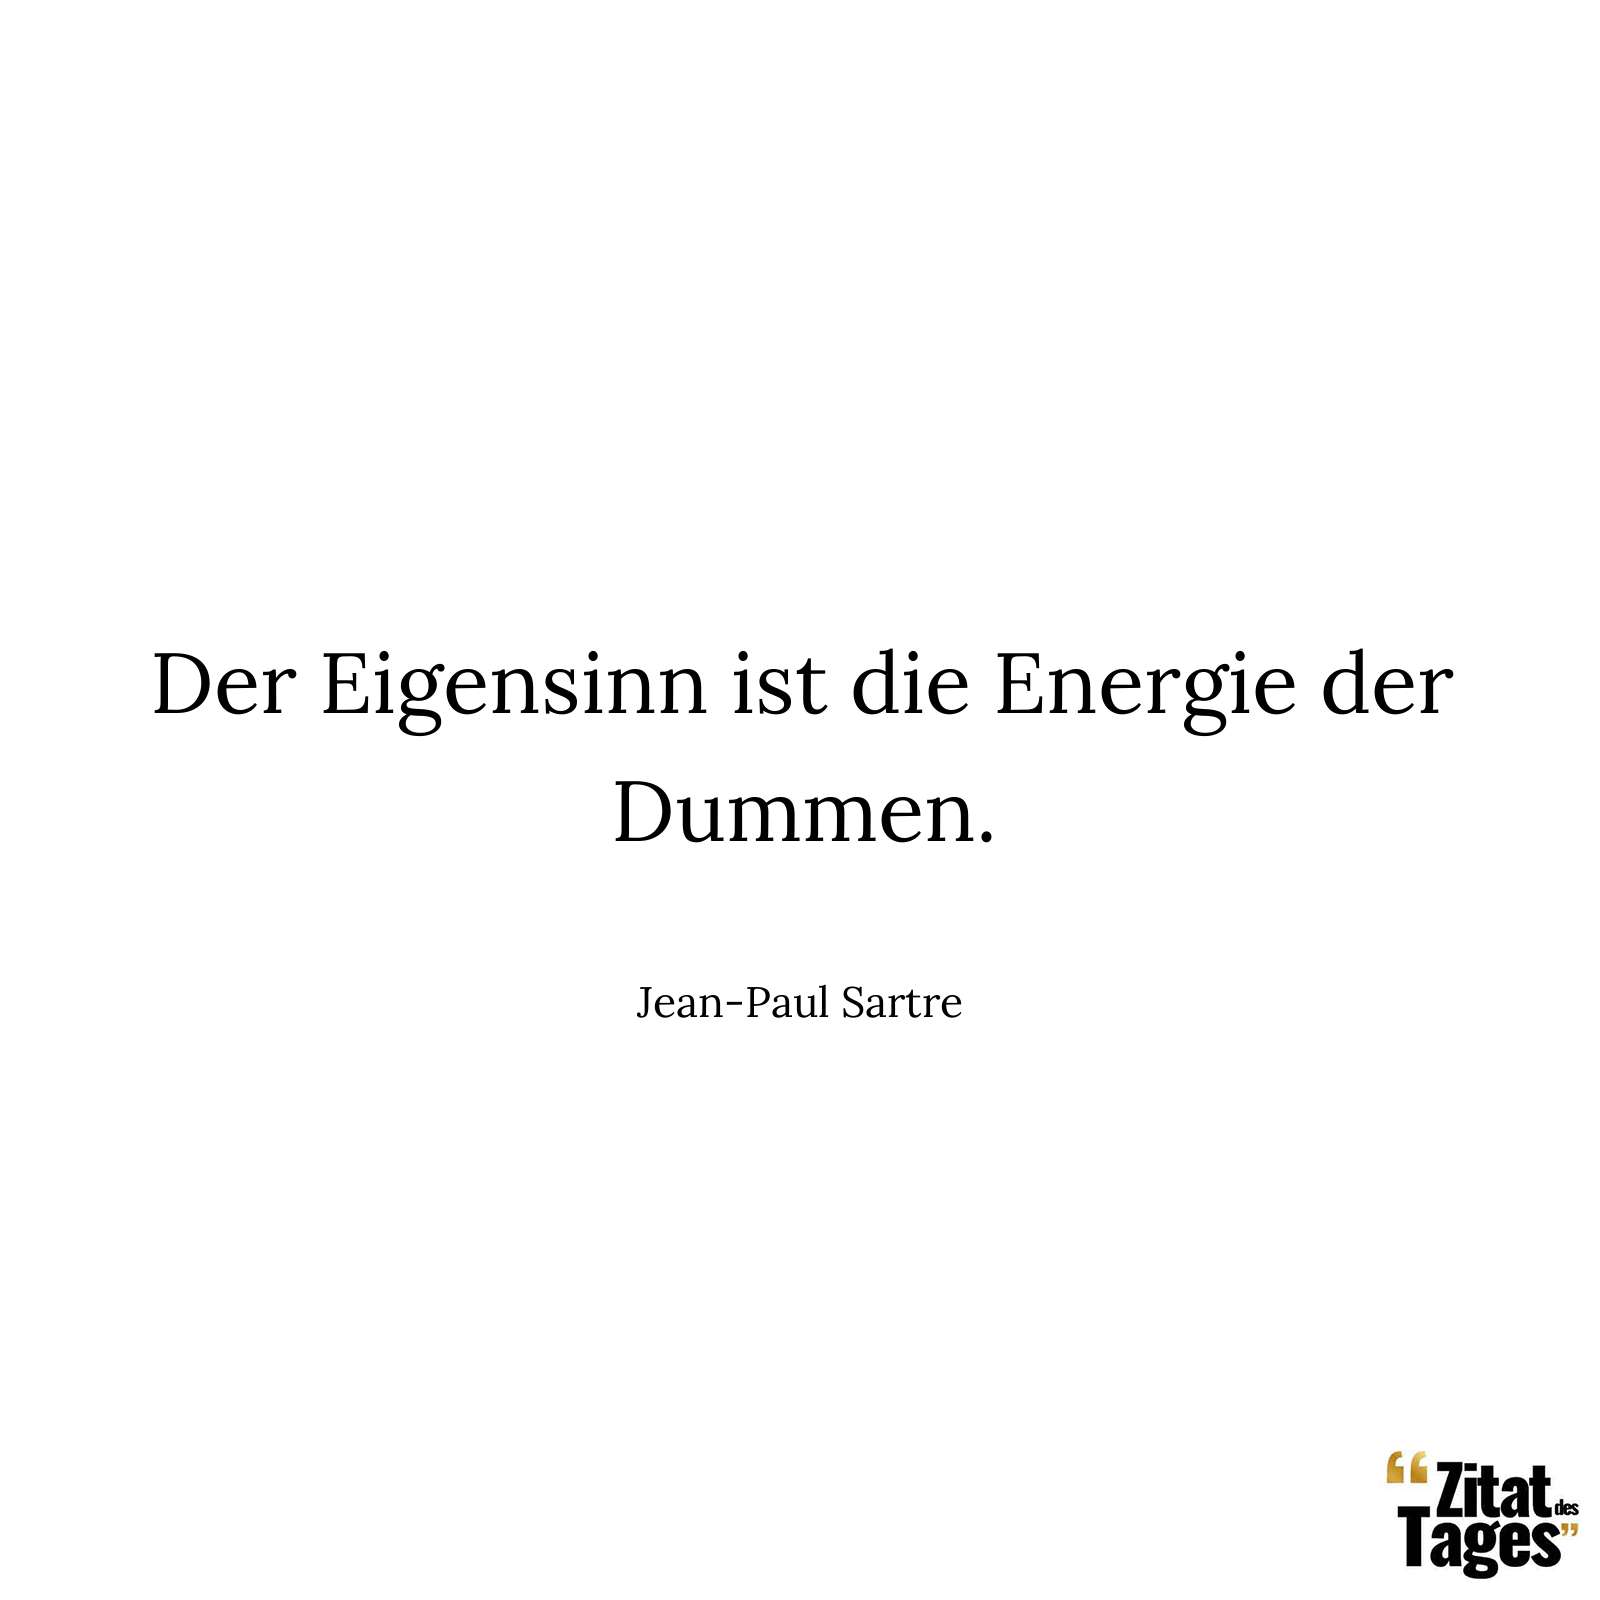 Der Eigensinn ist die Energie der Dummen. - Jean-Paul Sartre